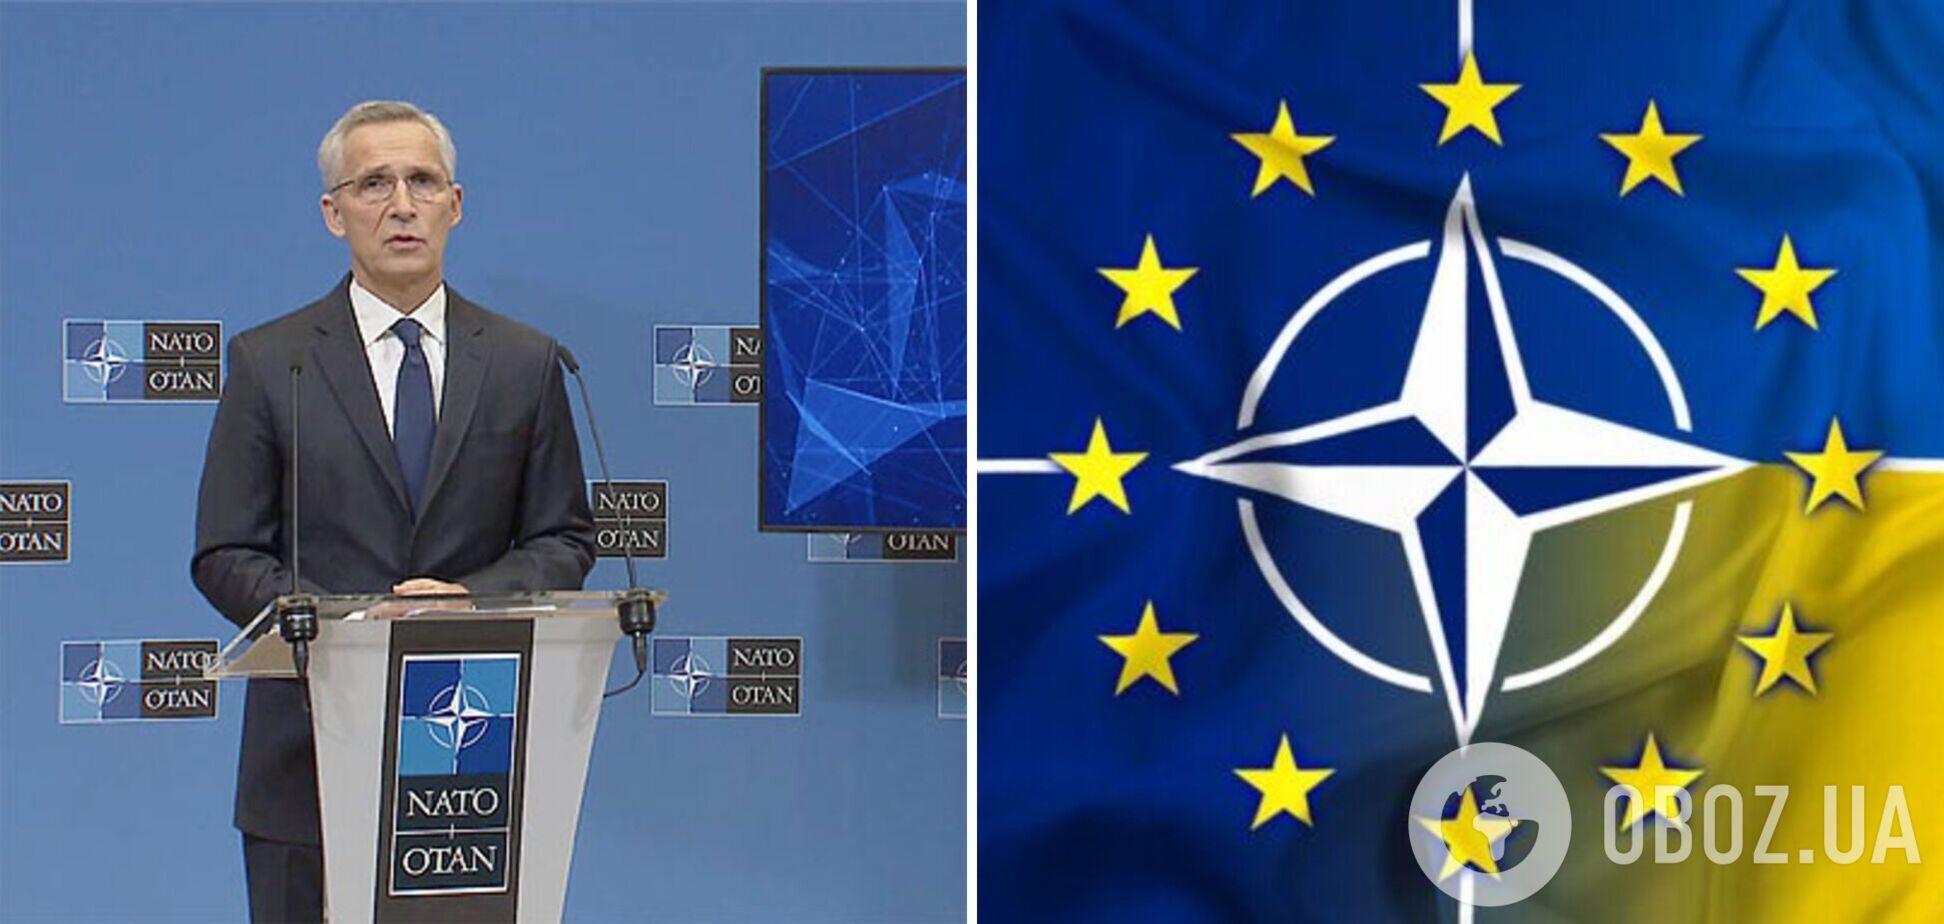 Столтенберг заявил, что двери НАТО открыты для Украины, но главная цель сейчас – помочь одержать победу в войне